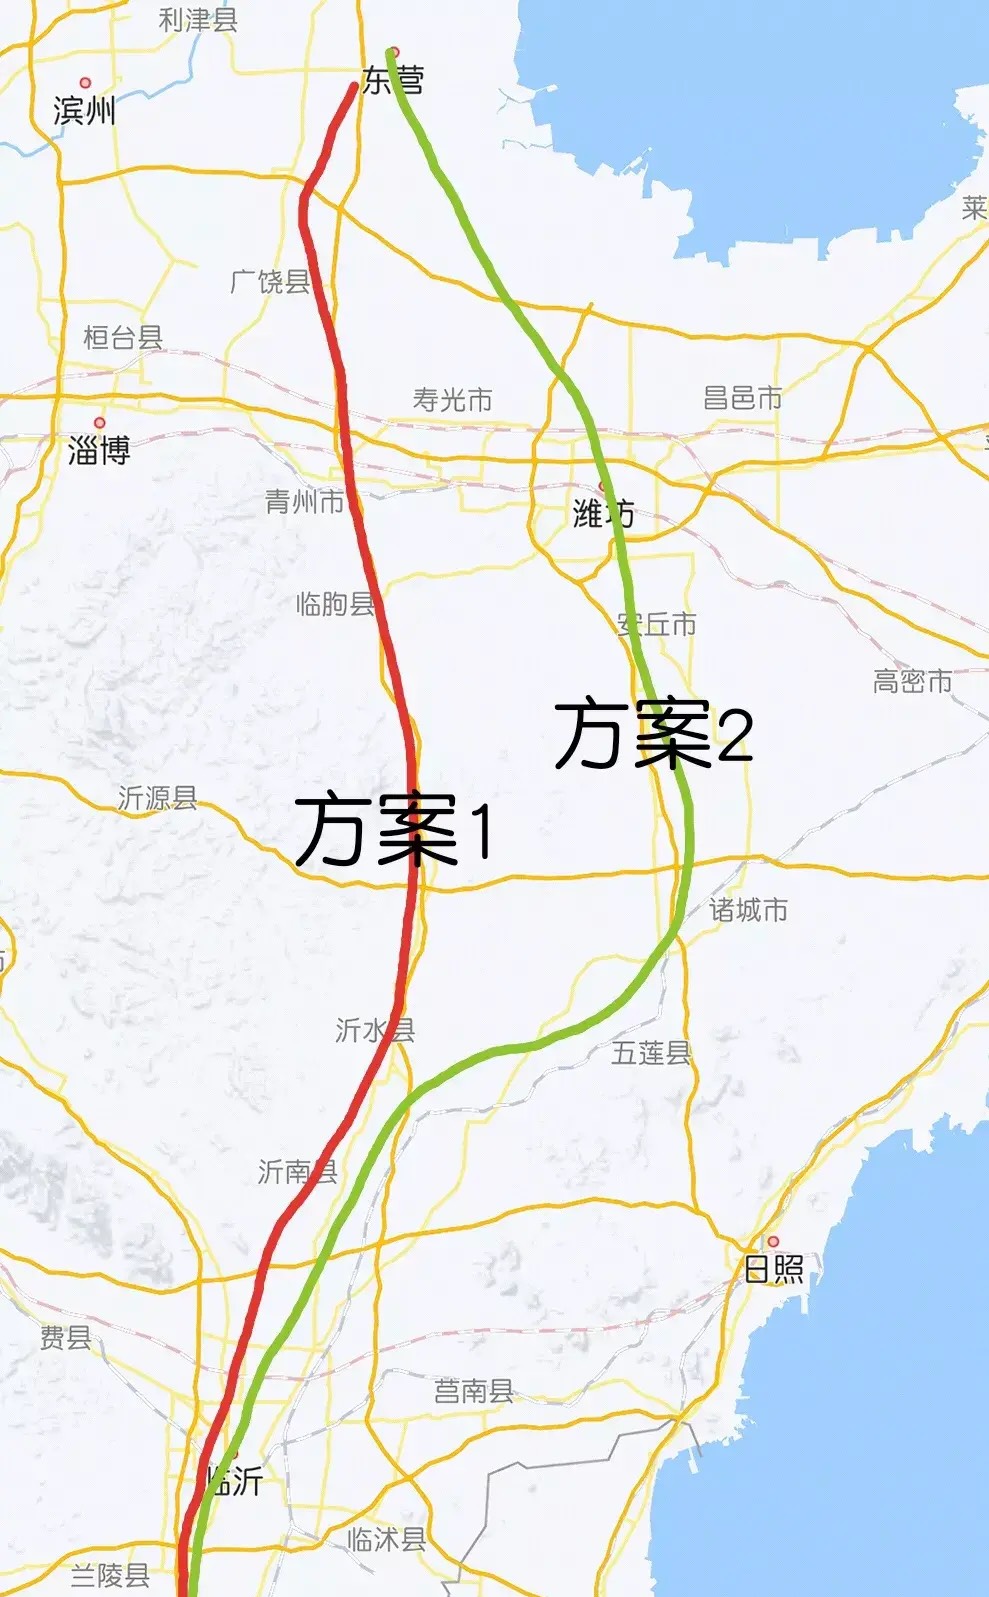 京沪高铁二线安丘北站图片